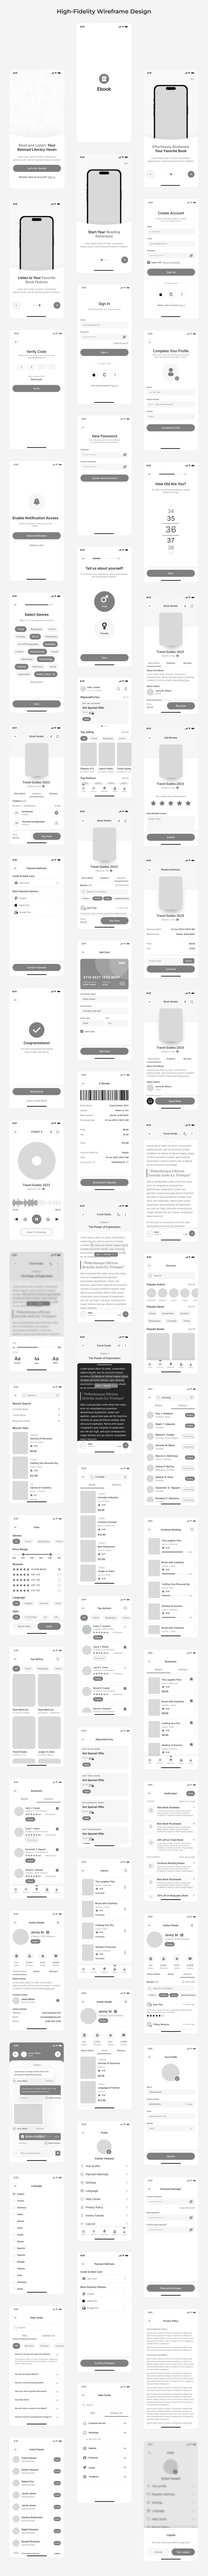 audio book app ui design